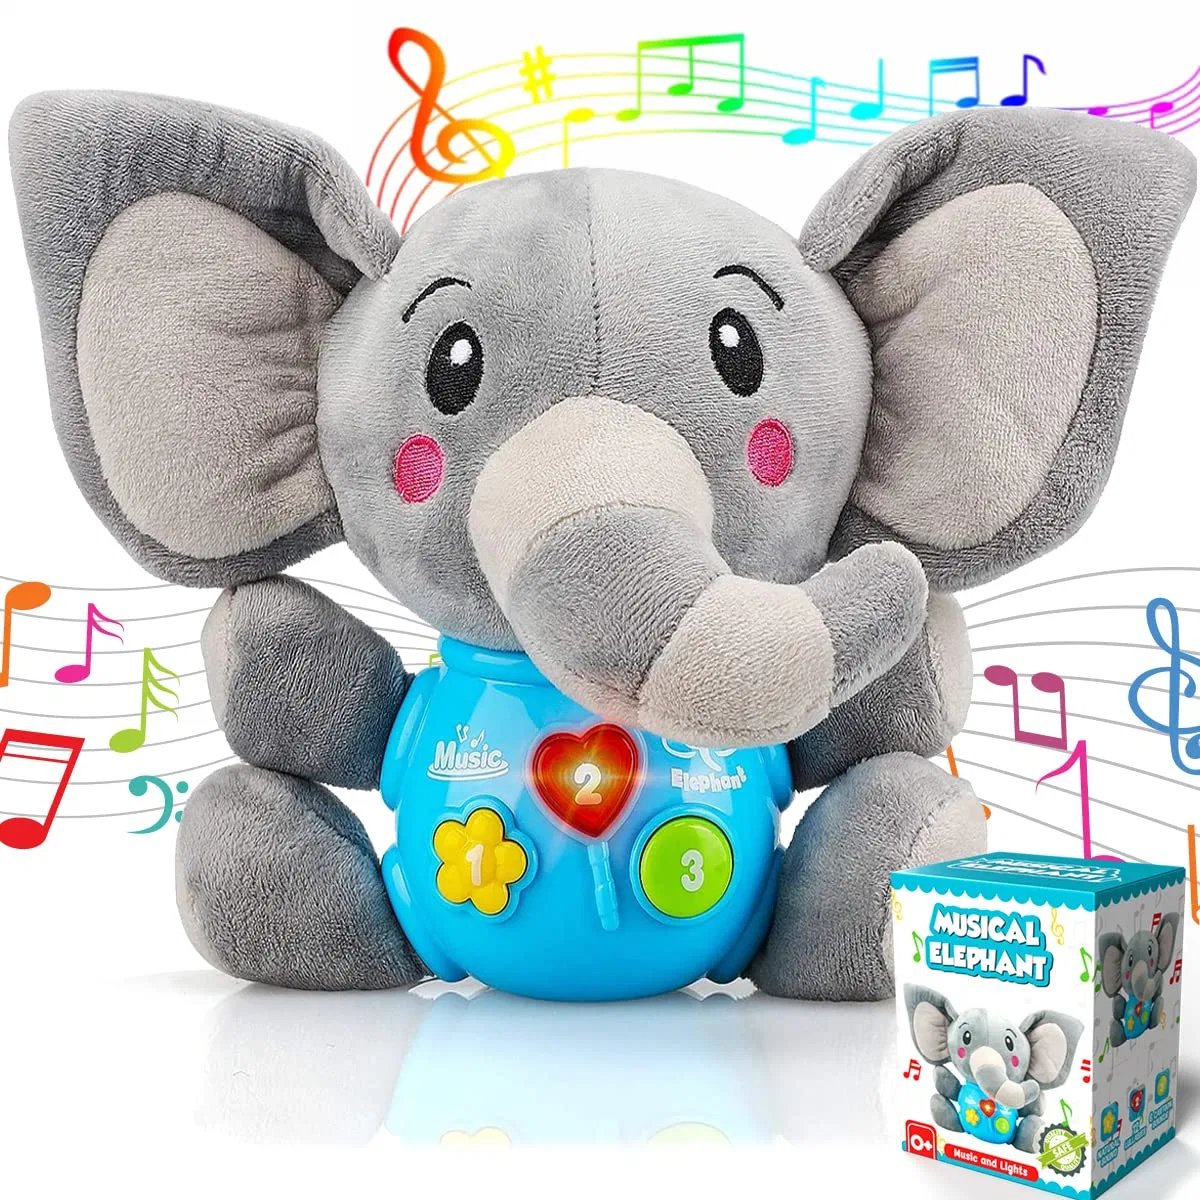 Elefant Baby Musikspielzeug Tierspielzeug Kinder Babyspielzeug Kinderkrankheiten Spielzeug Kleines Baby Bum Anime Plüsch Stem Spielzeug Montessori Spielzeug Für Baby gefüllt und Plüsch